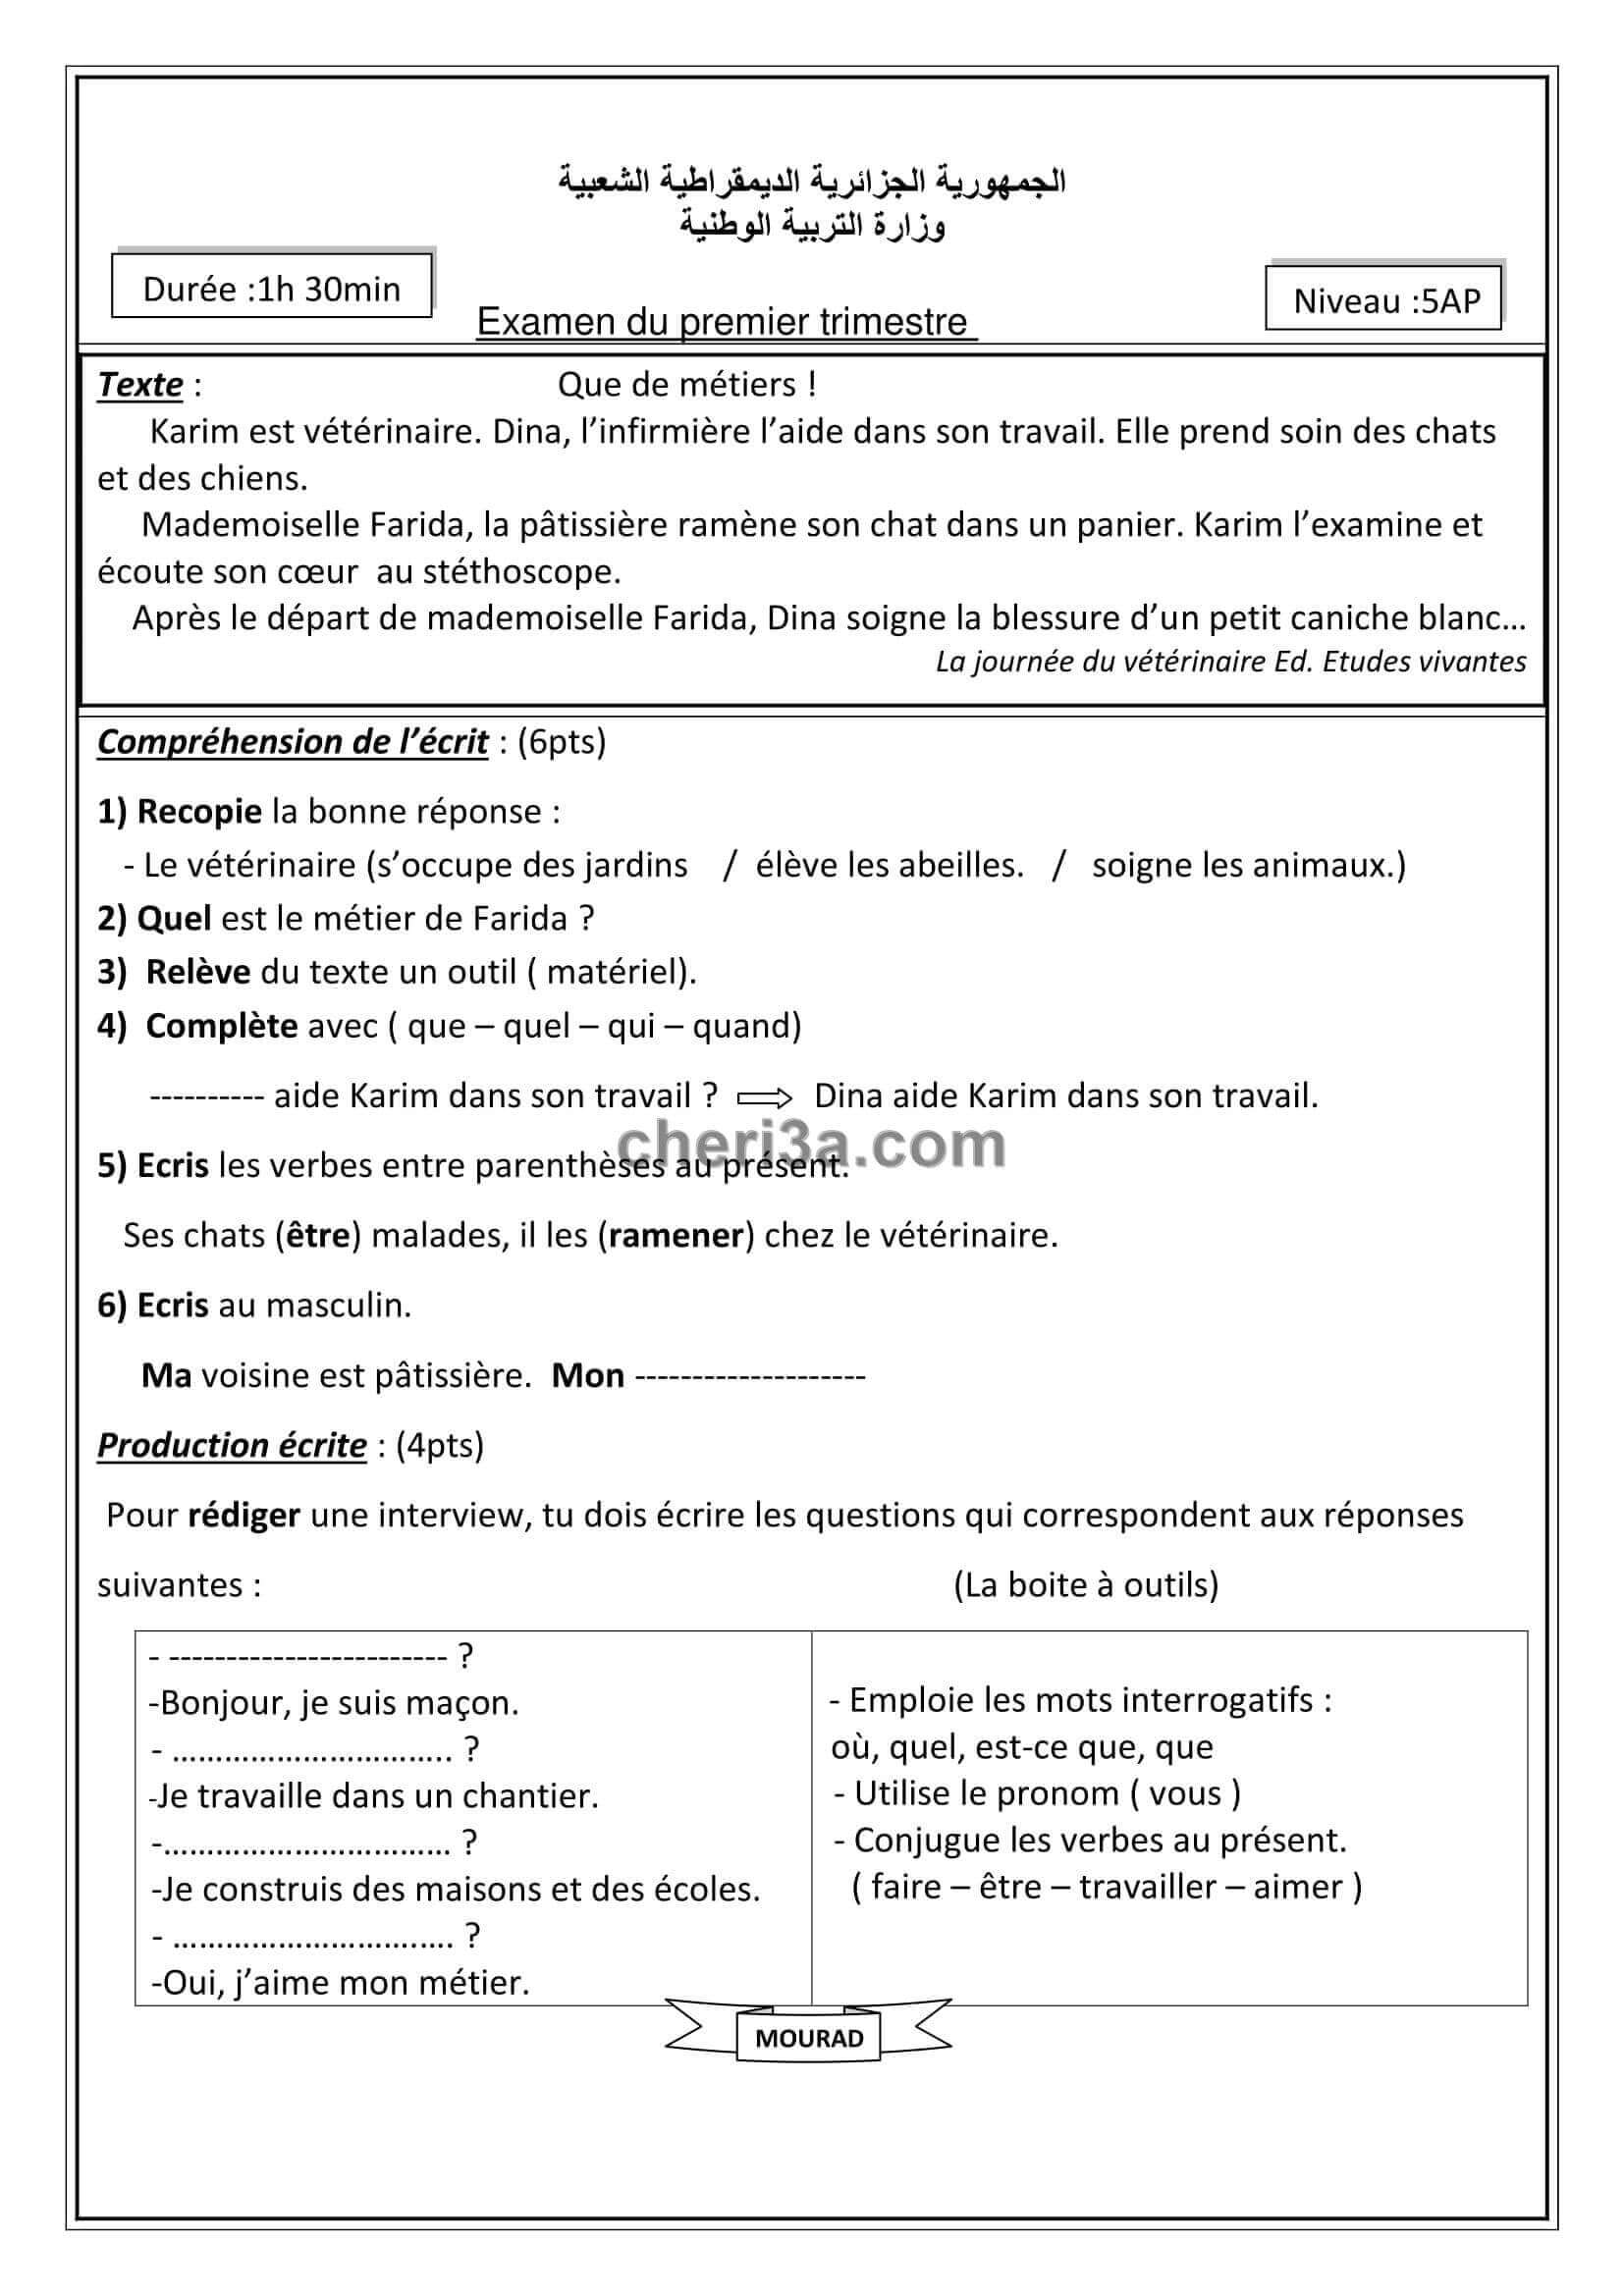 اختبار الفصل للسنة الخامسة ابتدائي في مادة اللغة الفرنسية النموذج 7